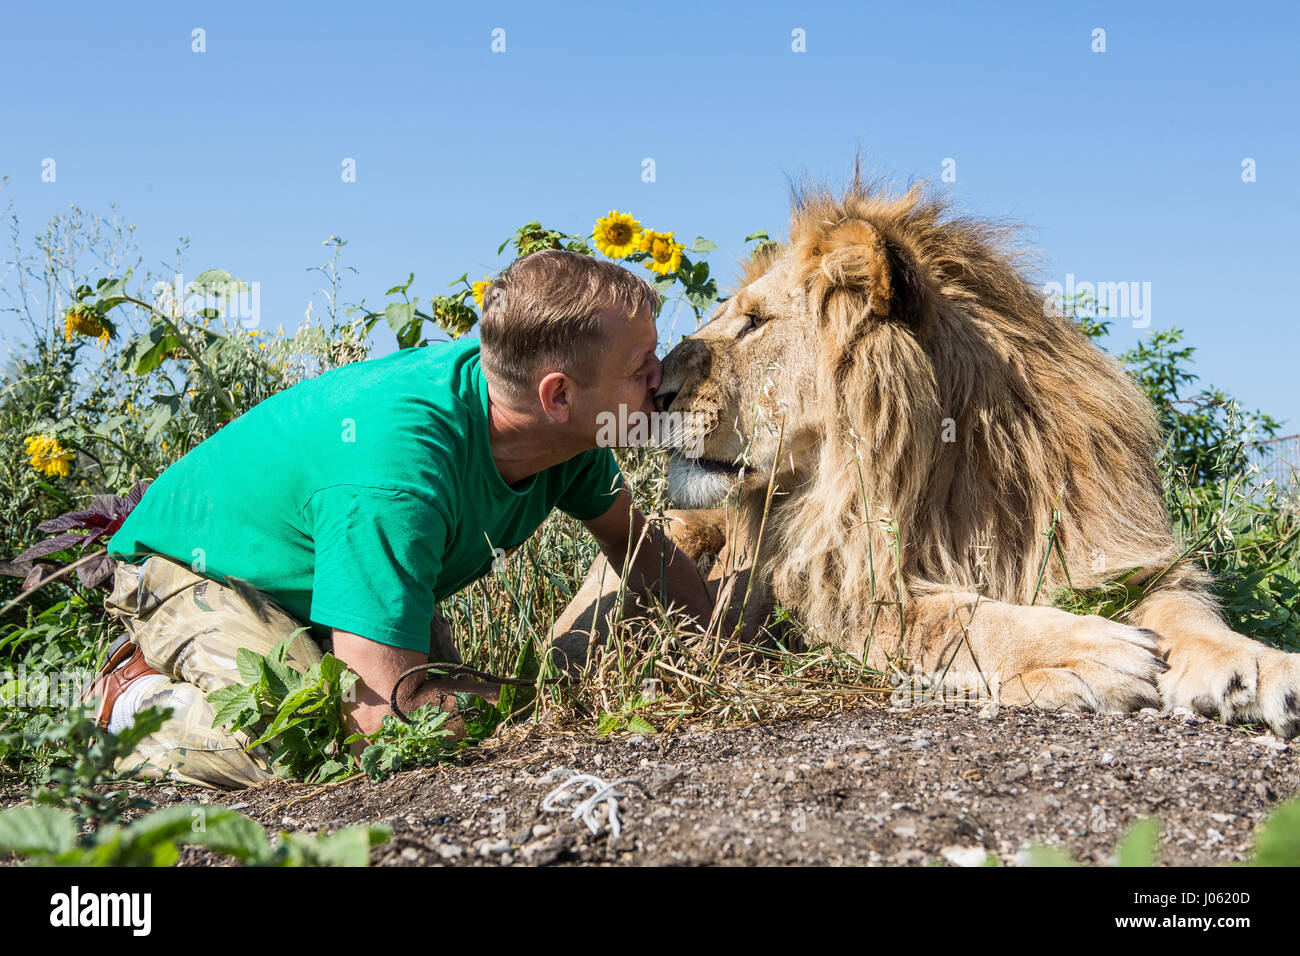 Oleg Zubkov küssen ein Löwe. ATEMBERAUBENDE Bilder von wilden Löwen und furchtlosen Menschen sitzen übereinander in einem Feld wurden von einem überrascht Fotografen eingefangen. Die surrealen Bilder zeigen stellen die 418-Pfund-Löwen begrüßen ihren menschlichen Begleiter wie sie gerne für Selfies, einander küssen auf den Mund und ein weißer Löwe streckt sogar eine helfende Pfote zu einem Mann in einem Teich schwimmen.  Andere Bilder zeigen die Löwen liebevoll Gruß Menschen aus ihren Autos und ein unglaubliches Bild, ein Mann tapfer legt seinen Arm im Mund des Tieres für die Kamera posieren. Die spektakulären Bilder w Stockfoto